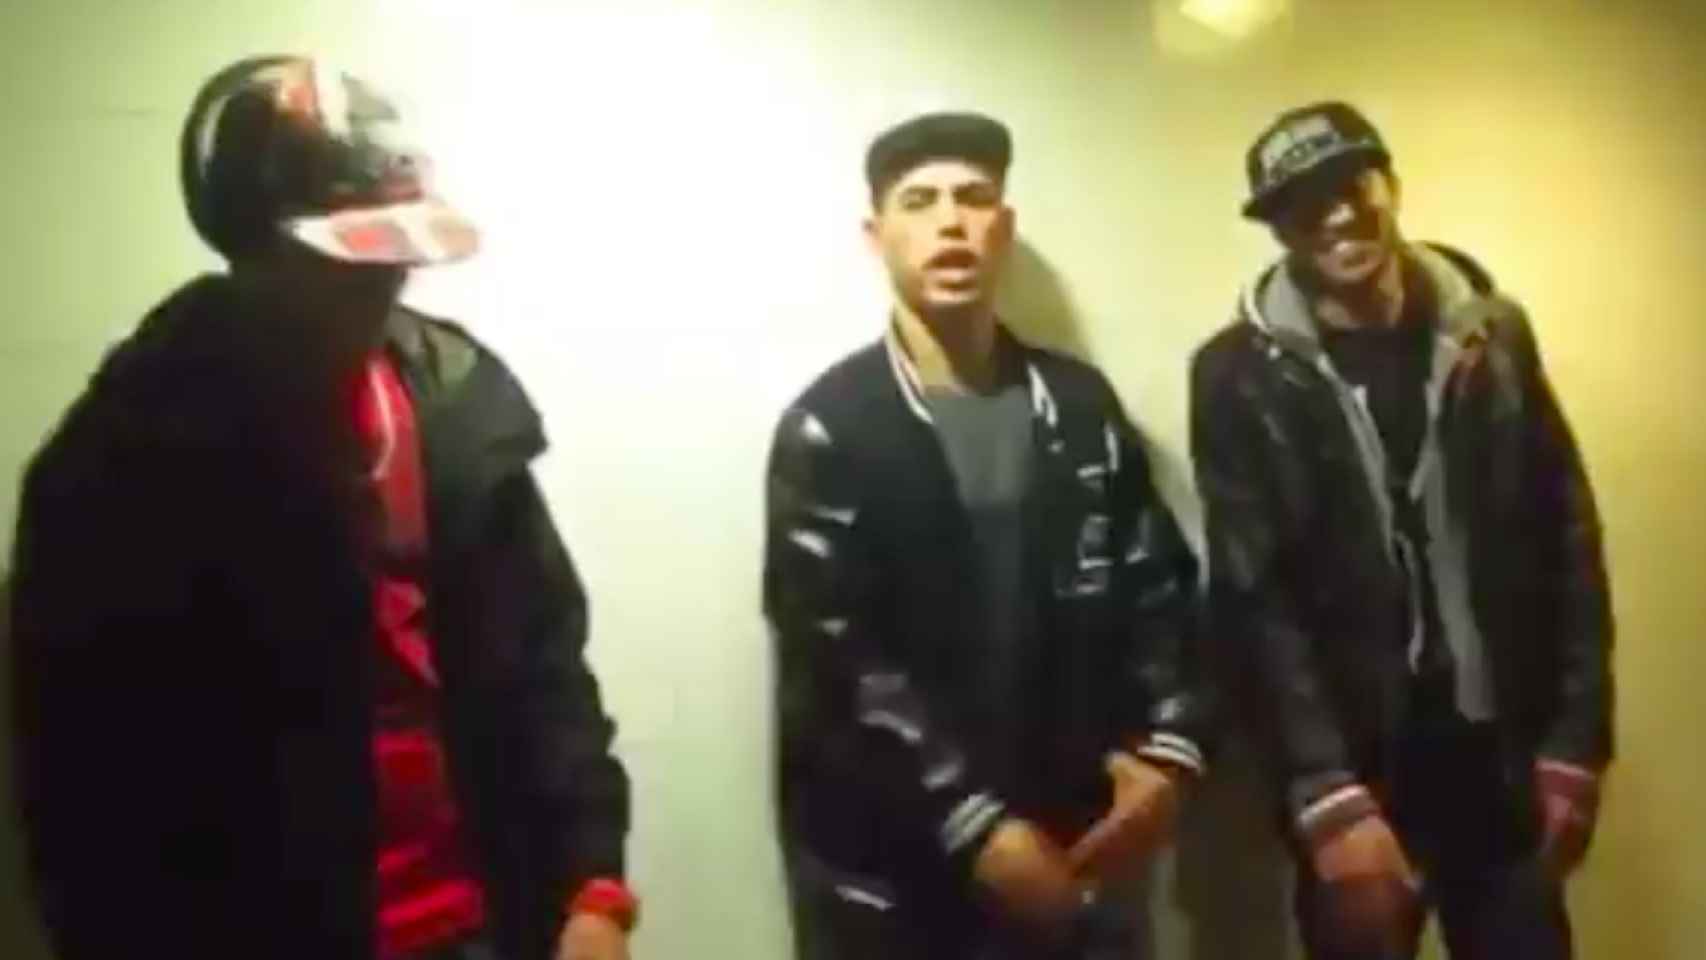 Fragmento de un vídeo musical de un grupo de jóvenes de Barcelona, que podrían ser charmiles, presumiendo sobre supuestos robos